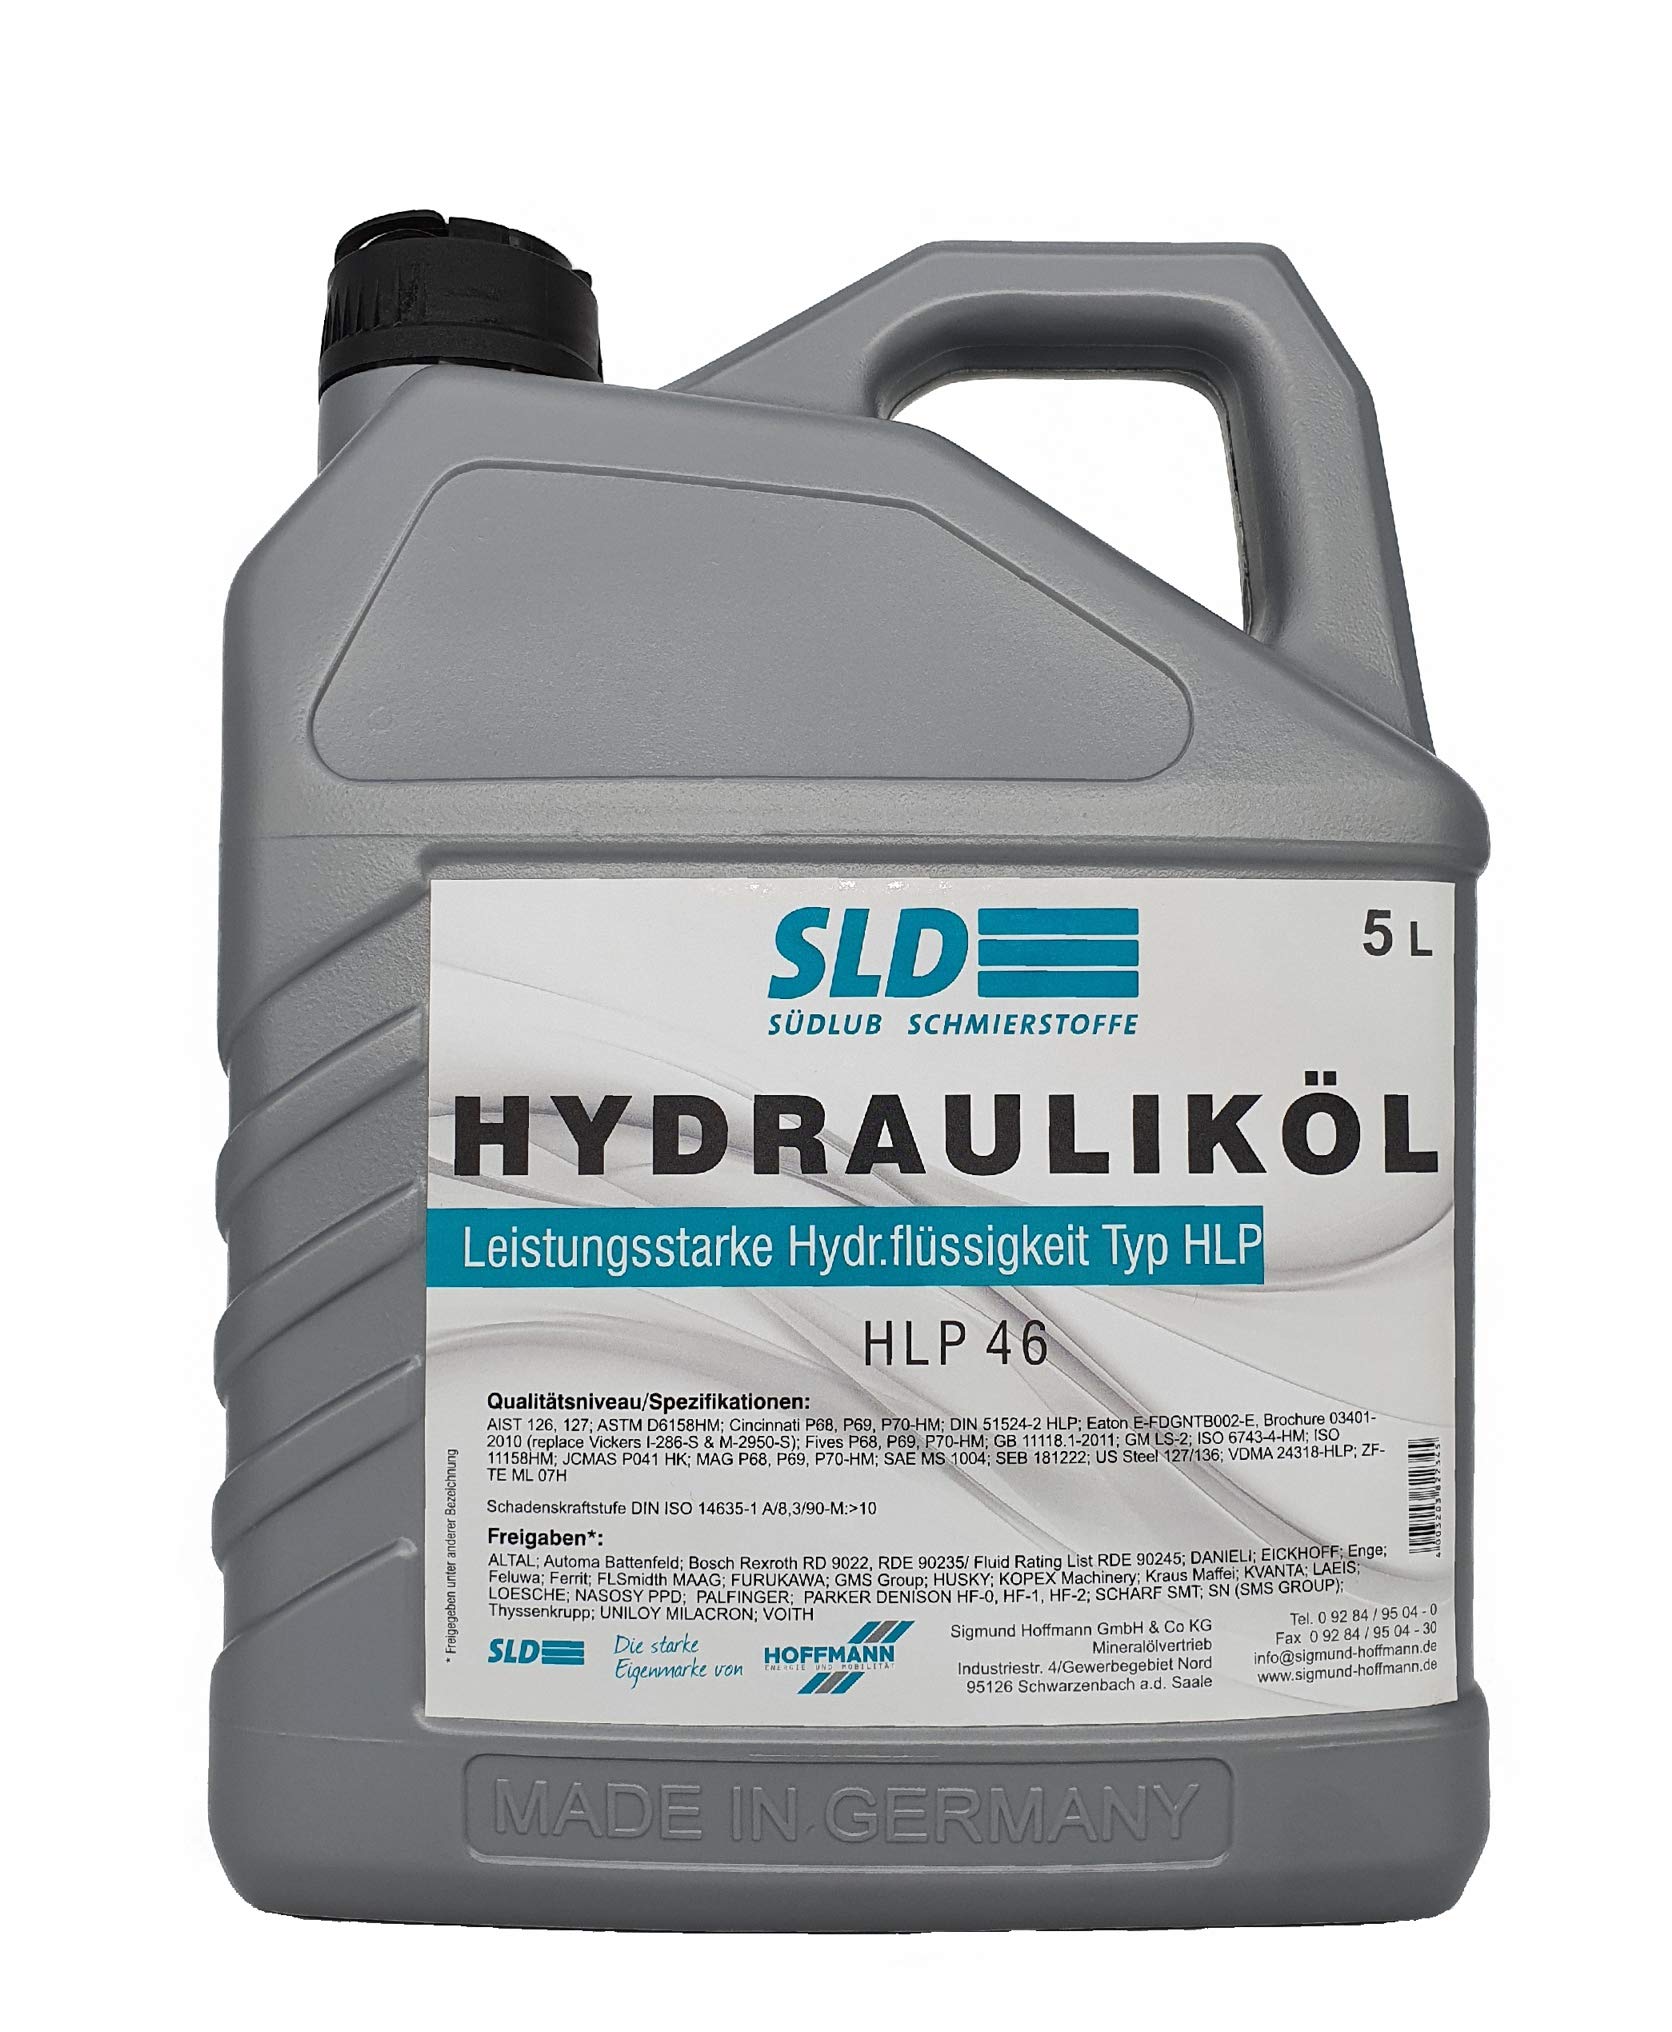 Südlub Hydrauliköl HLP 46, 5 Liter von SLD Südlub Schmierstoffe